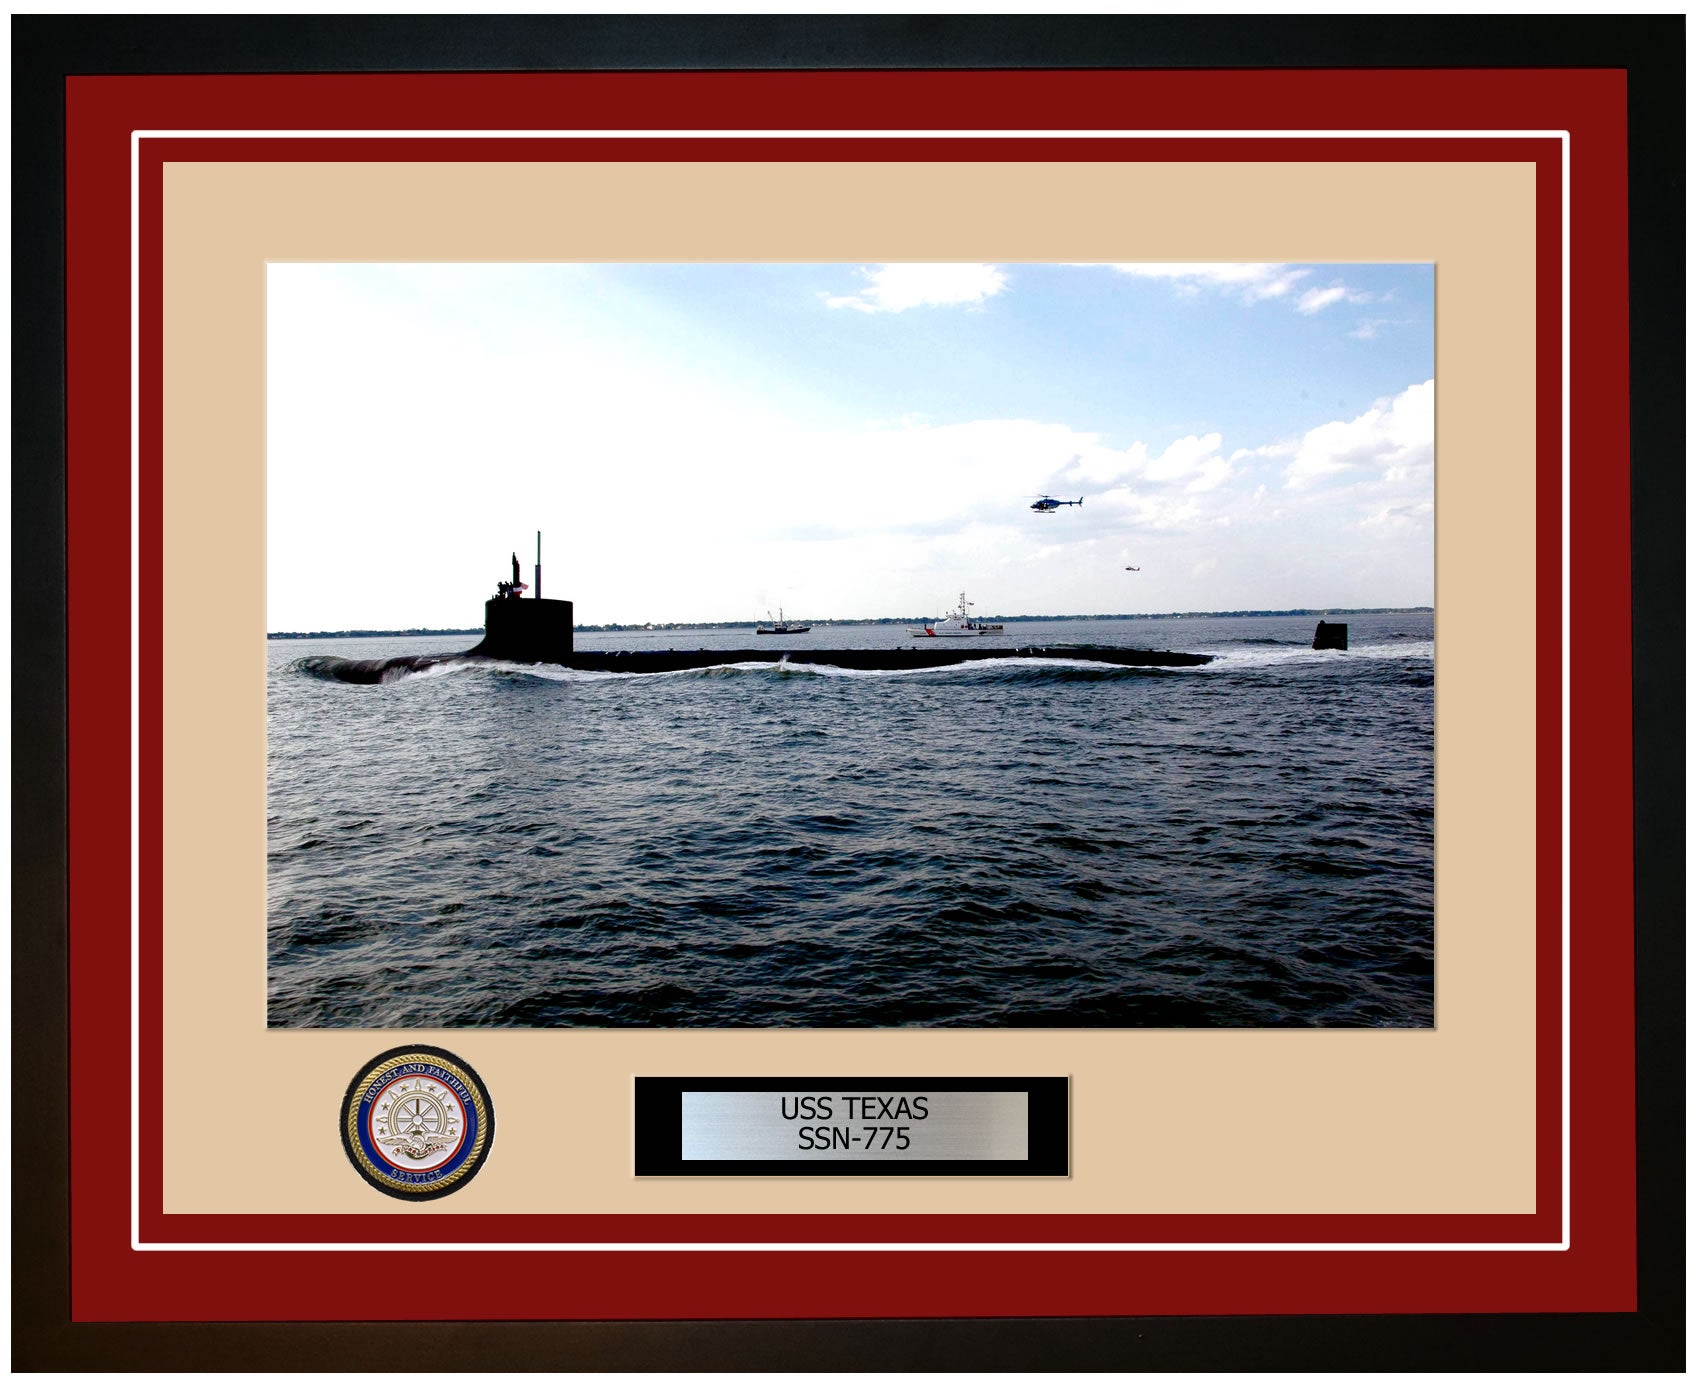 USS Texas SSN-775 Framed Navy Ship Photo Burgundy